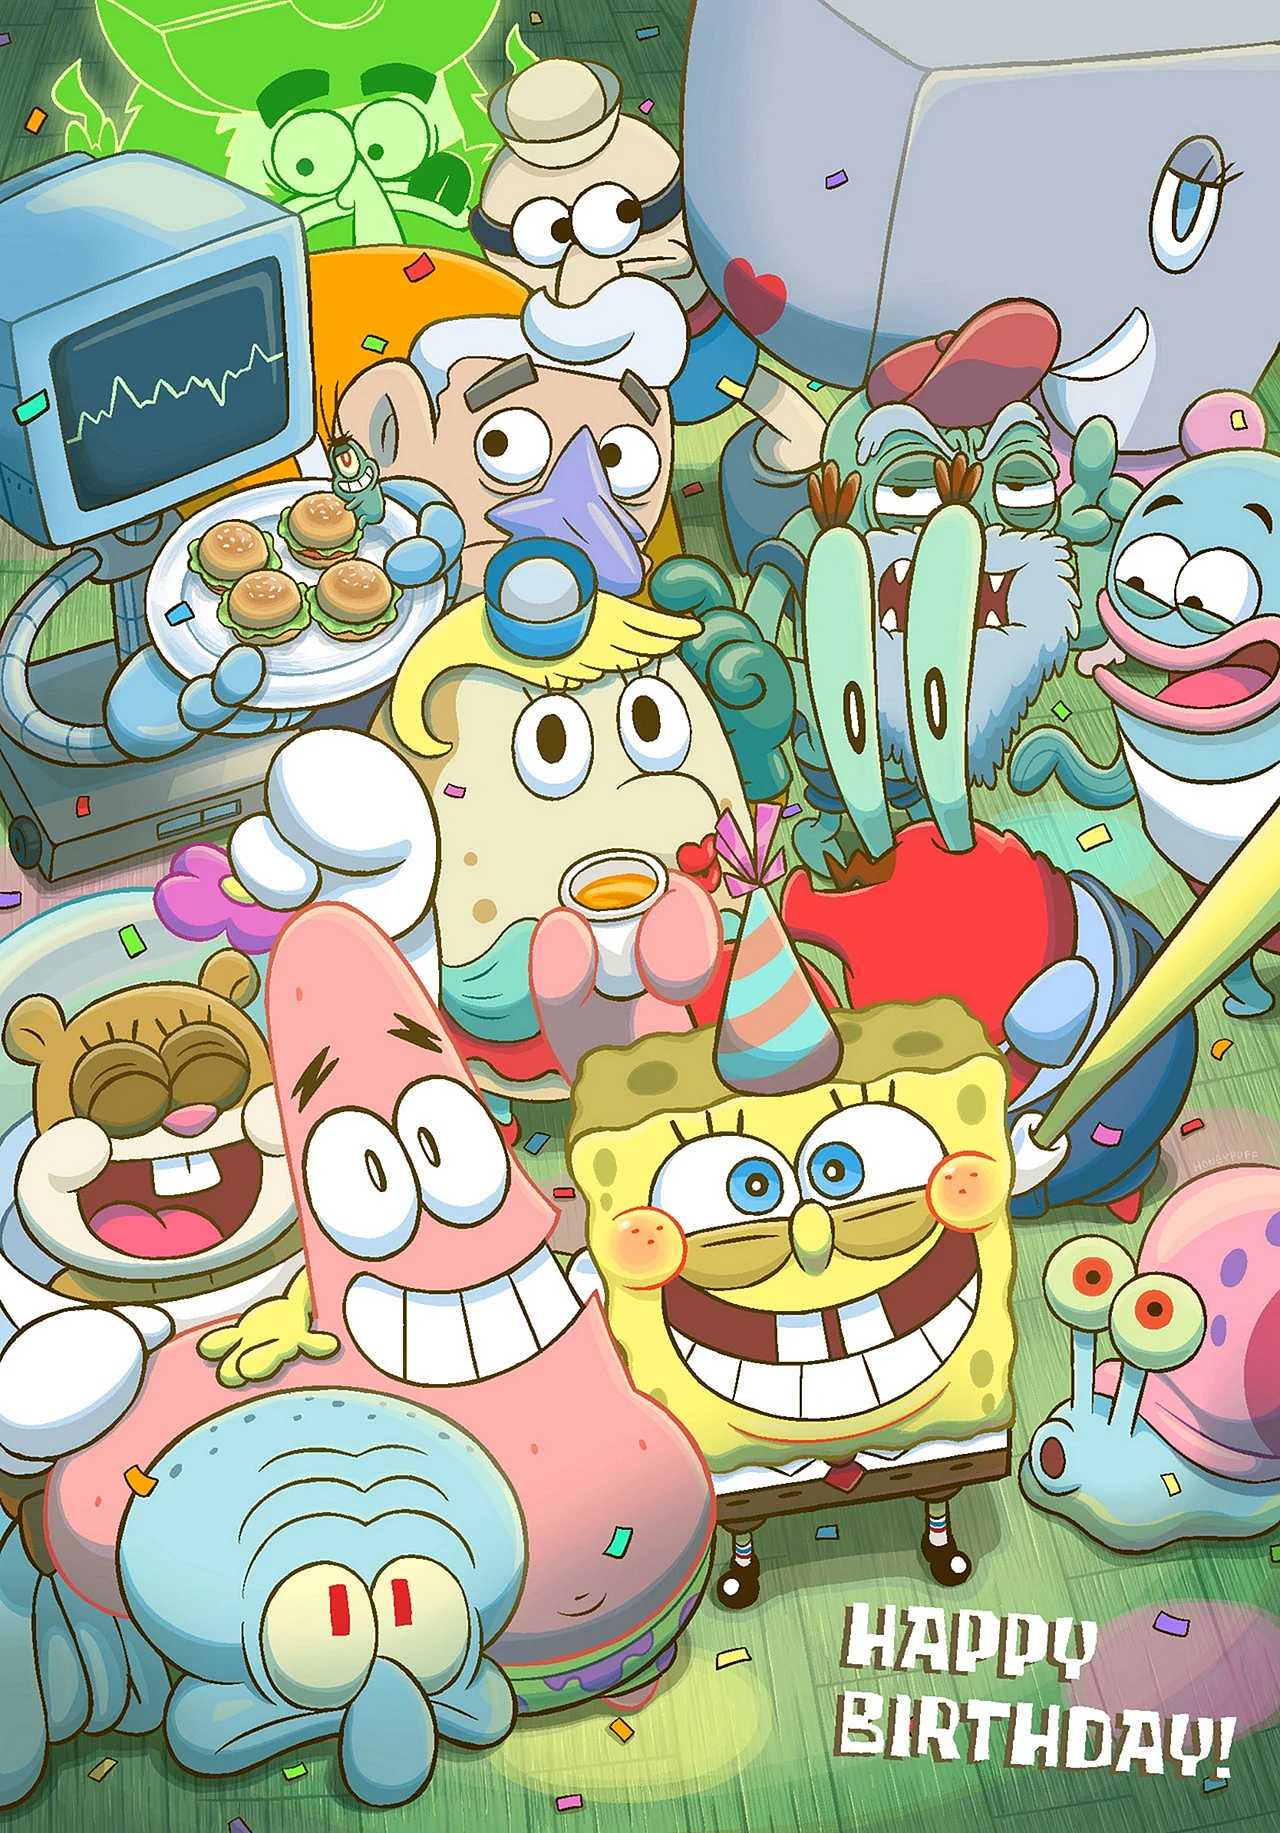 Kartun Spongebob Anime Wallpaper For iPhone